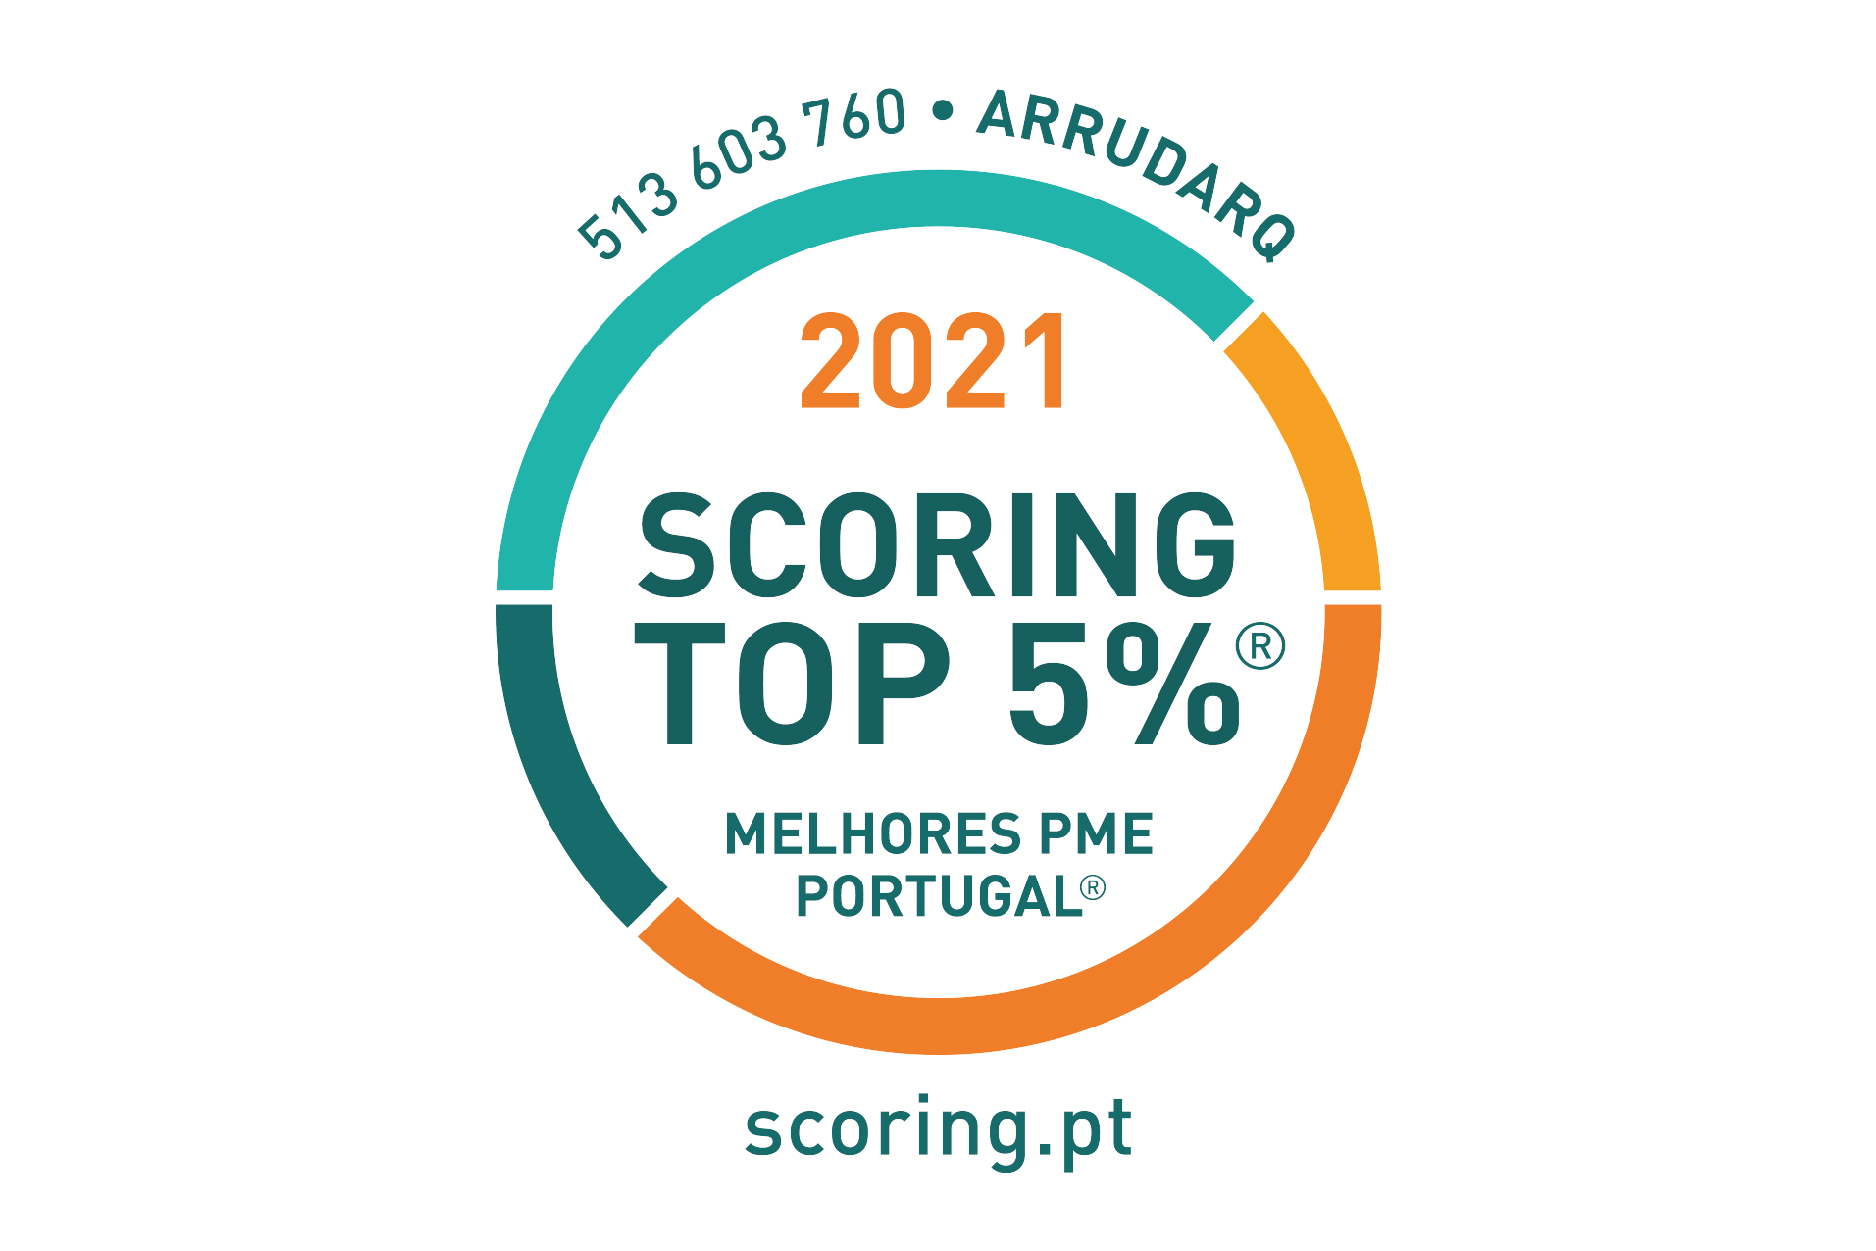 Arrudarq distinguida no TOP 5% MELHORES PME PORTUGAL 2021